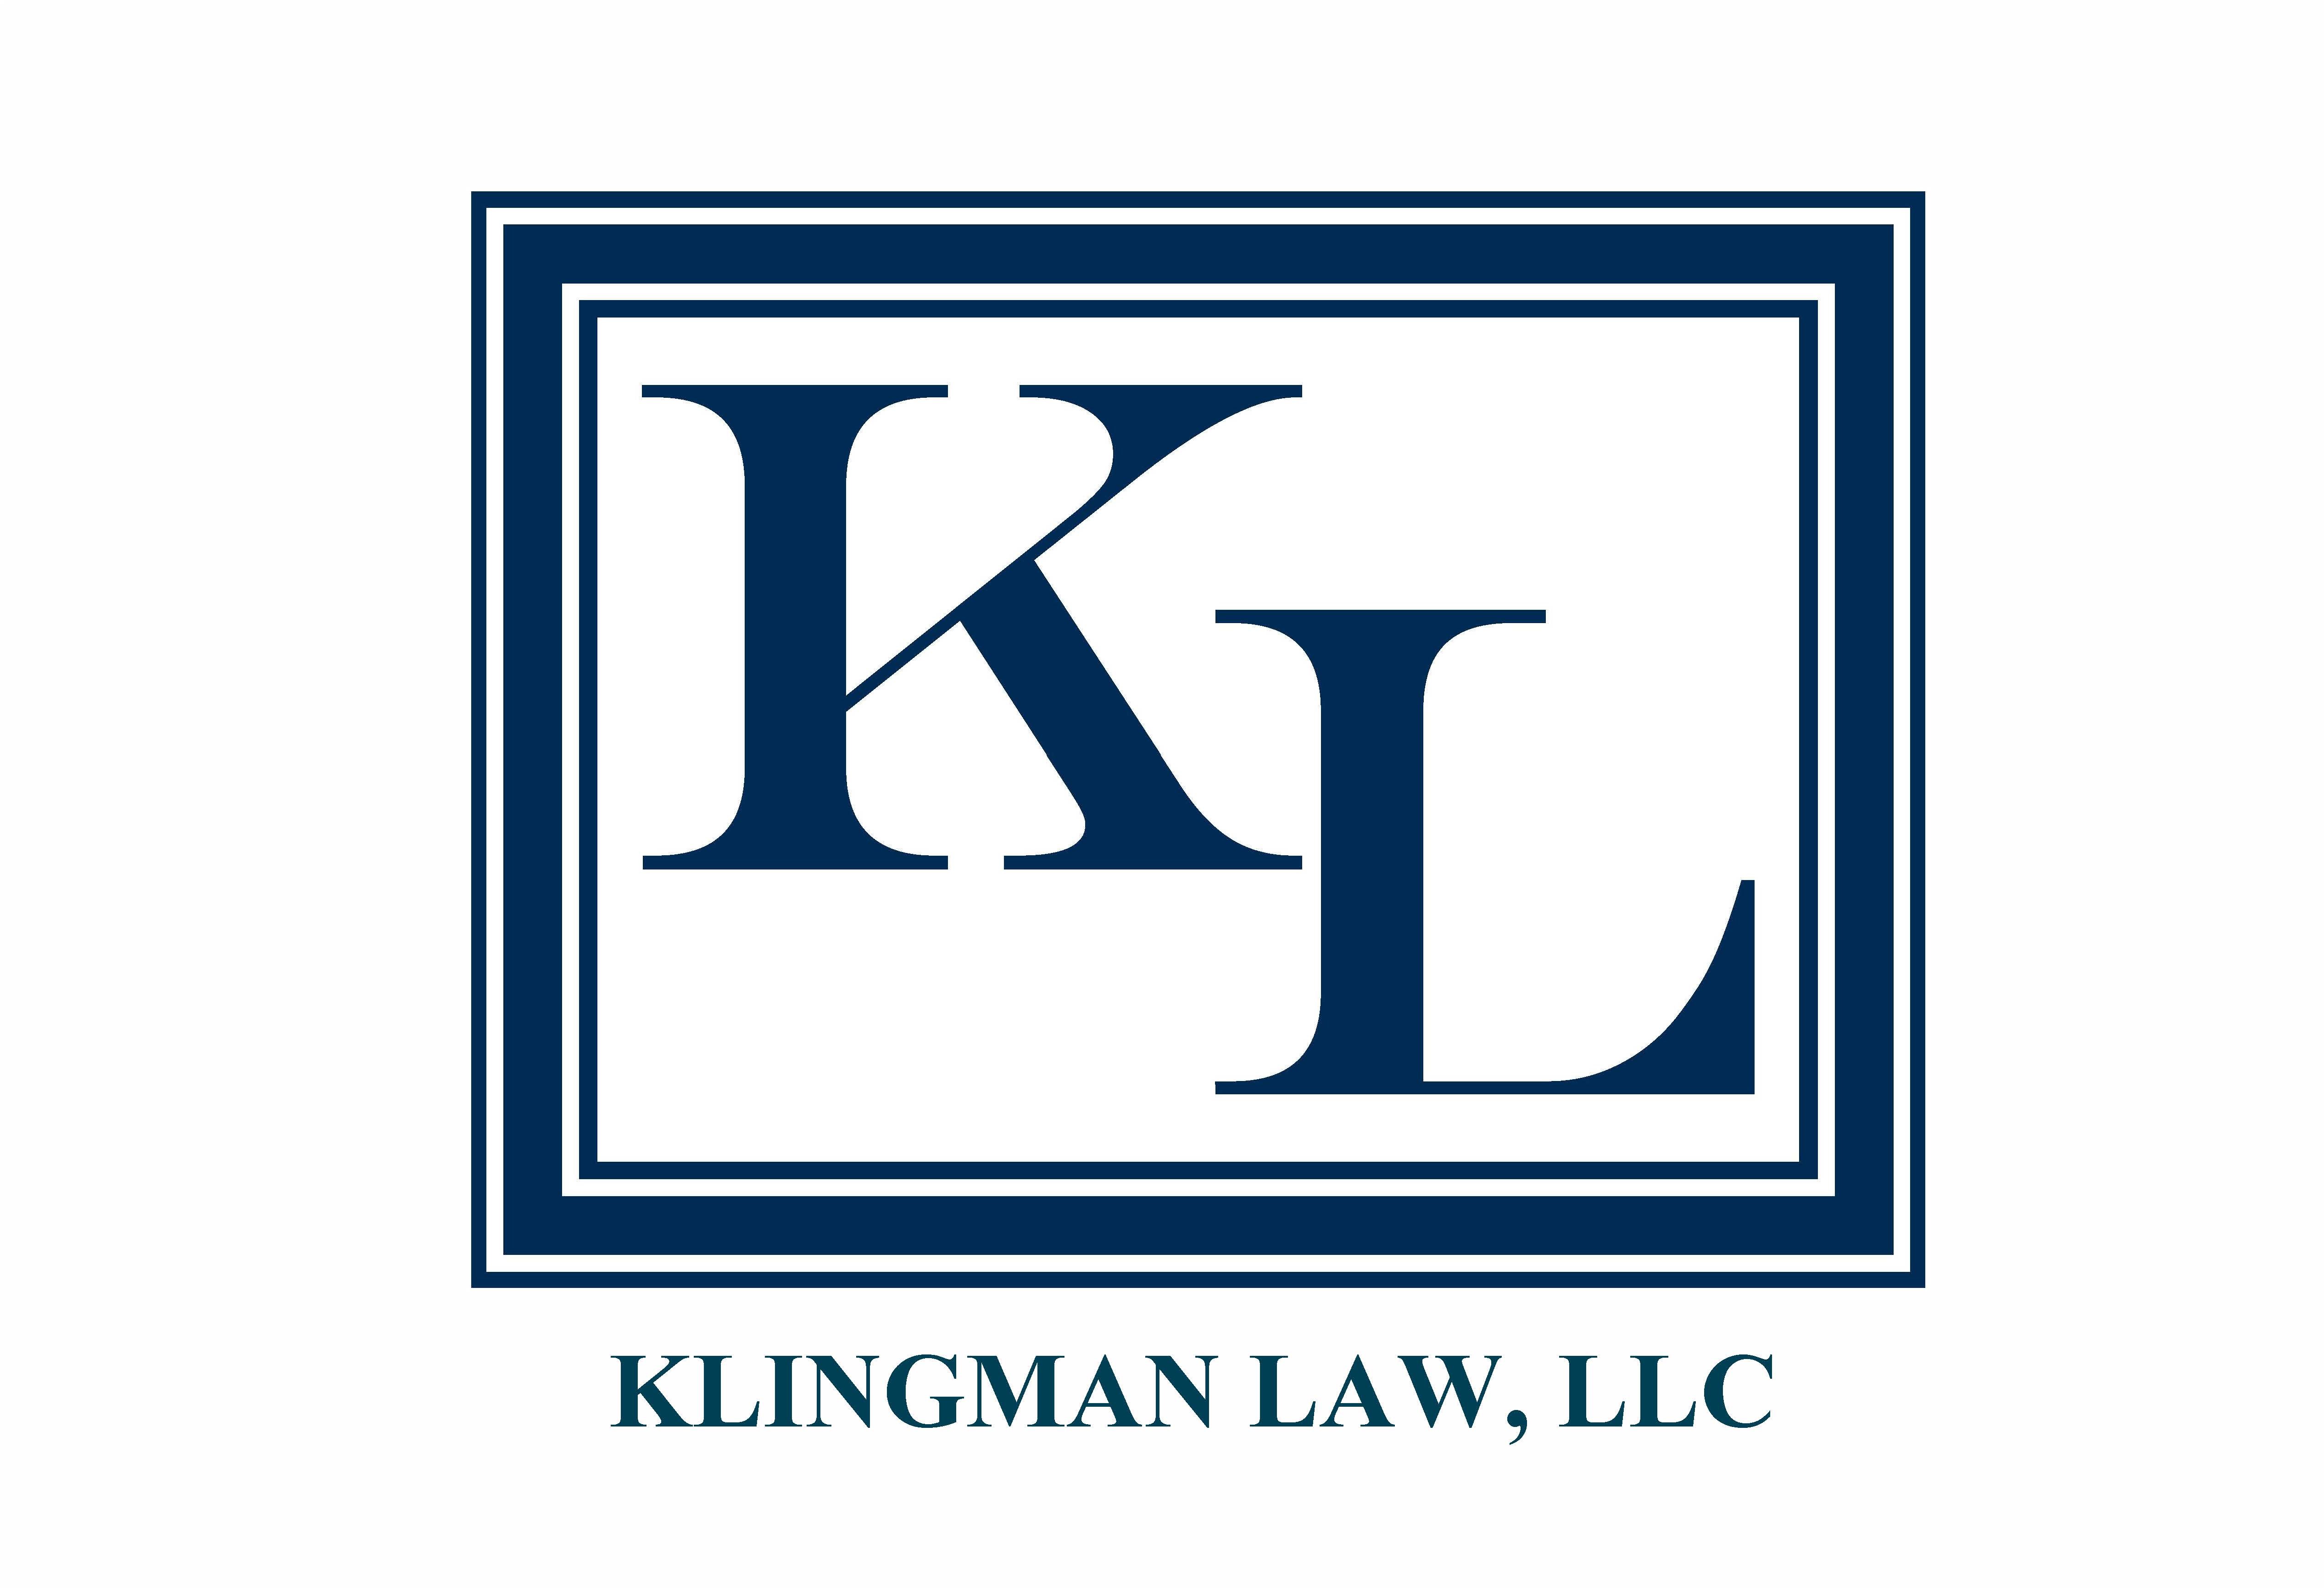 Klingman Law, LLC